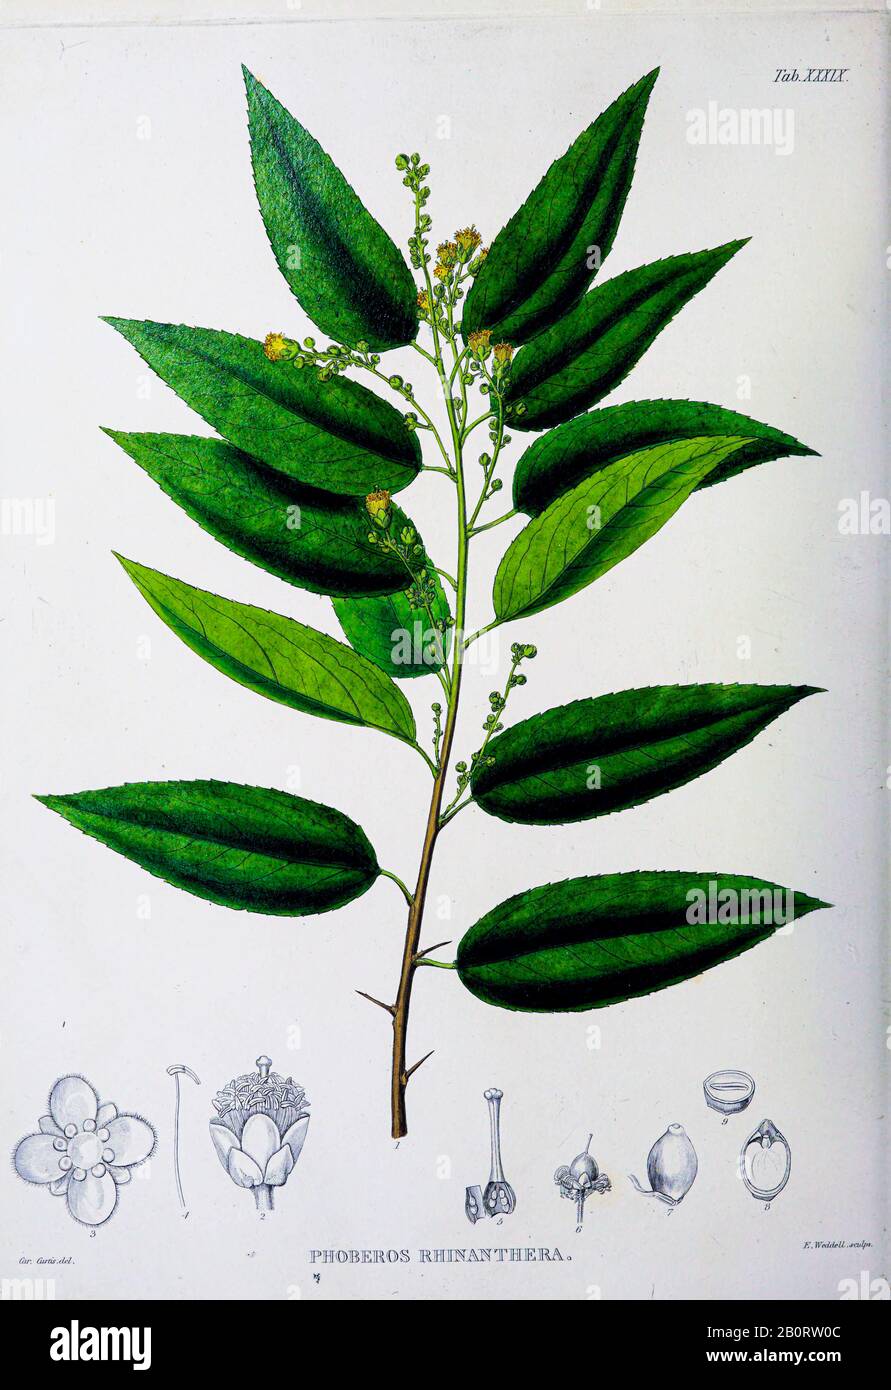 Phoberos rhinanthera from the 19th century manuscript 'Plantae Javanicae rariores, descriptae iconibusque illustratae, quas in insula Java, annis 1802 Stock Photo